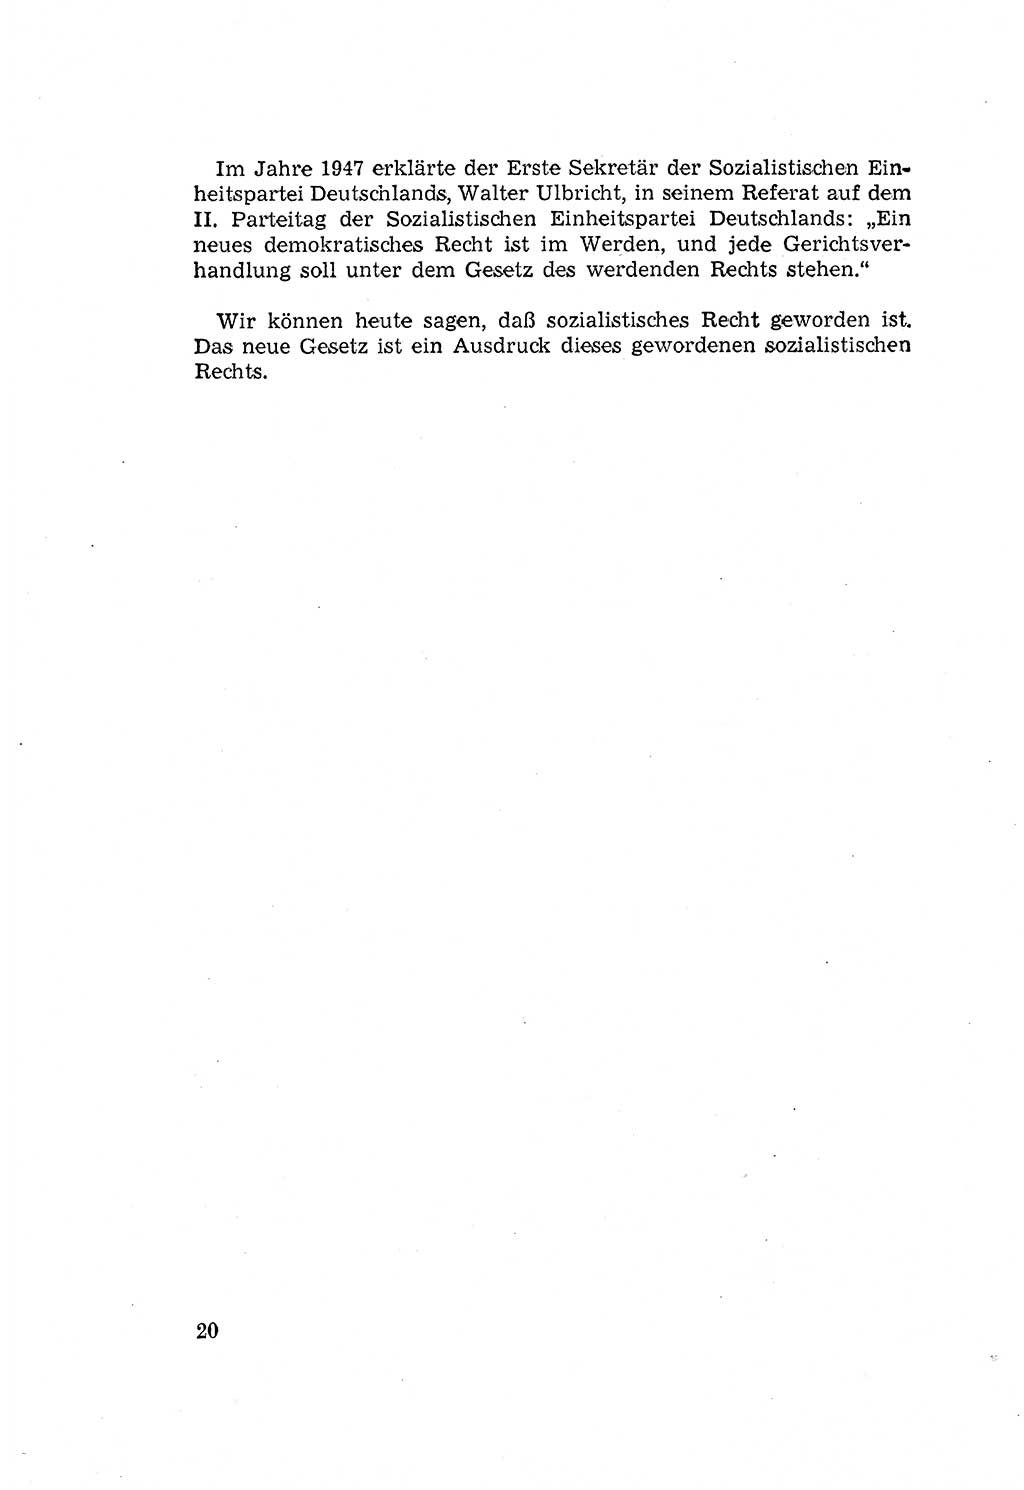 Zum Erlaß des Gesetzes zur Ergänzung des Strafgesetzbuches (StGB), Strafergänzungsgesetz (StEG) [Deutsche Demokratische Republik (DDR)] 1957, Seite 20 (StGB StEG DDR 1957, S. 20)